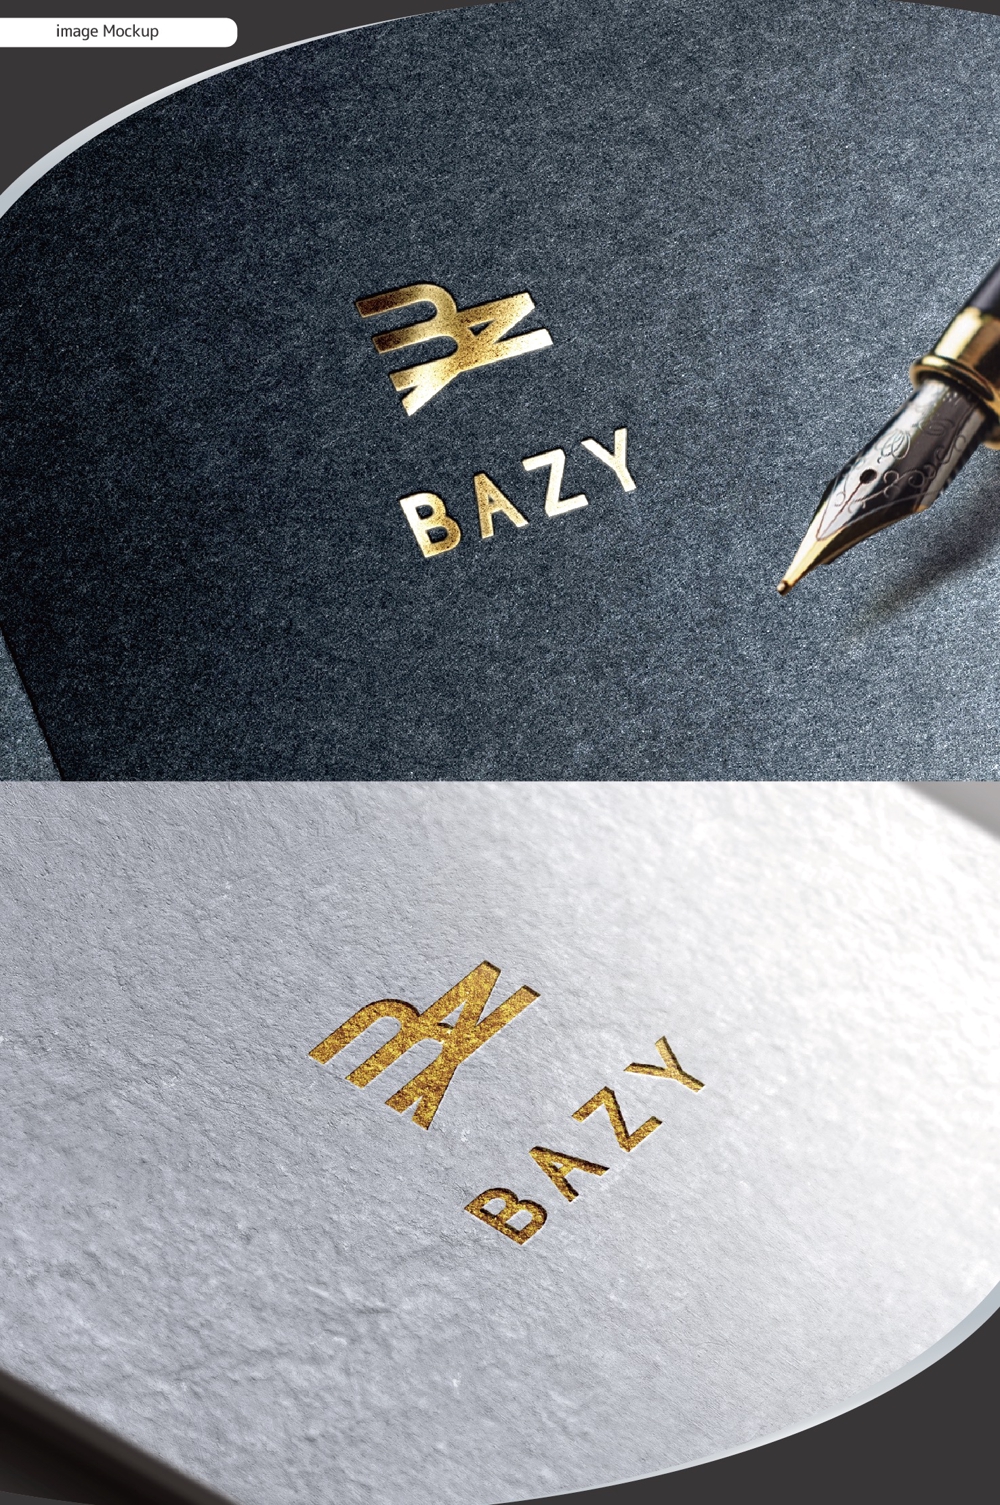 小売業者「BAZY」のロゴ